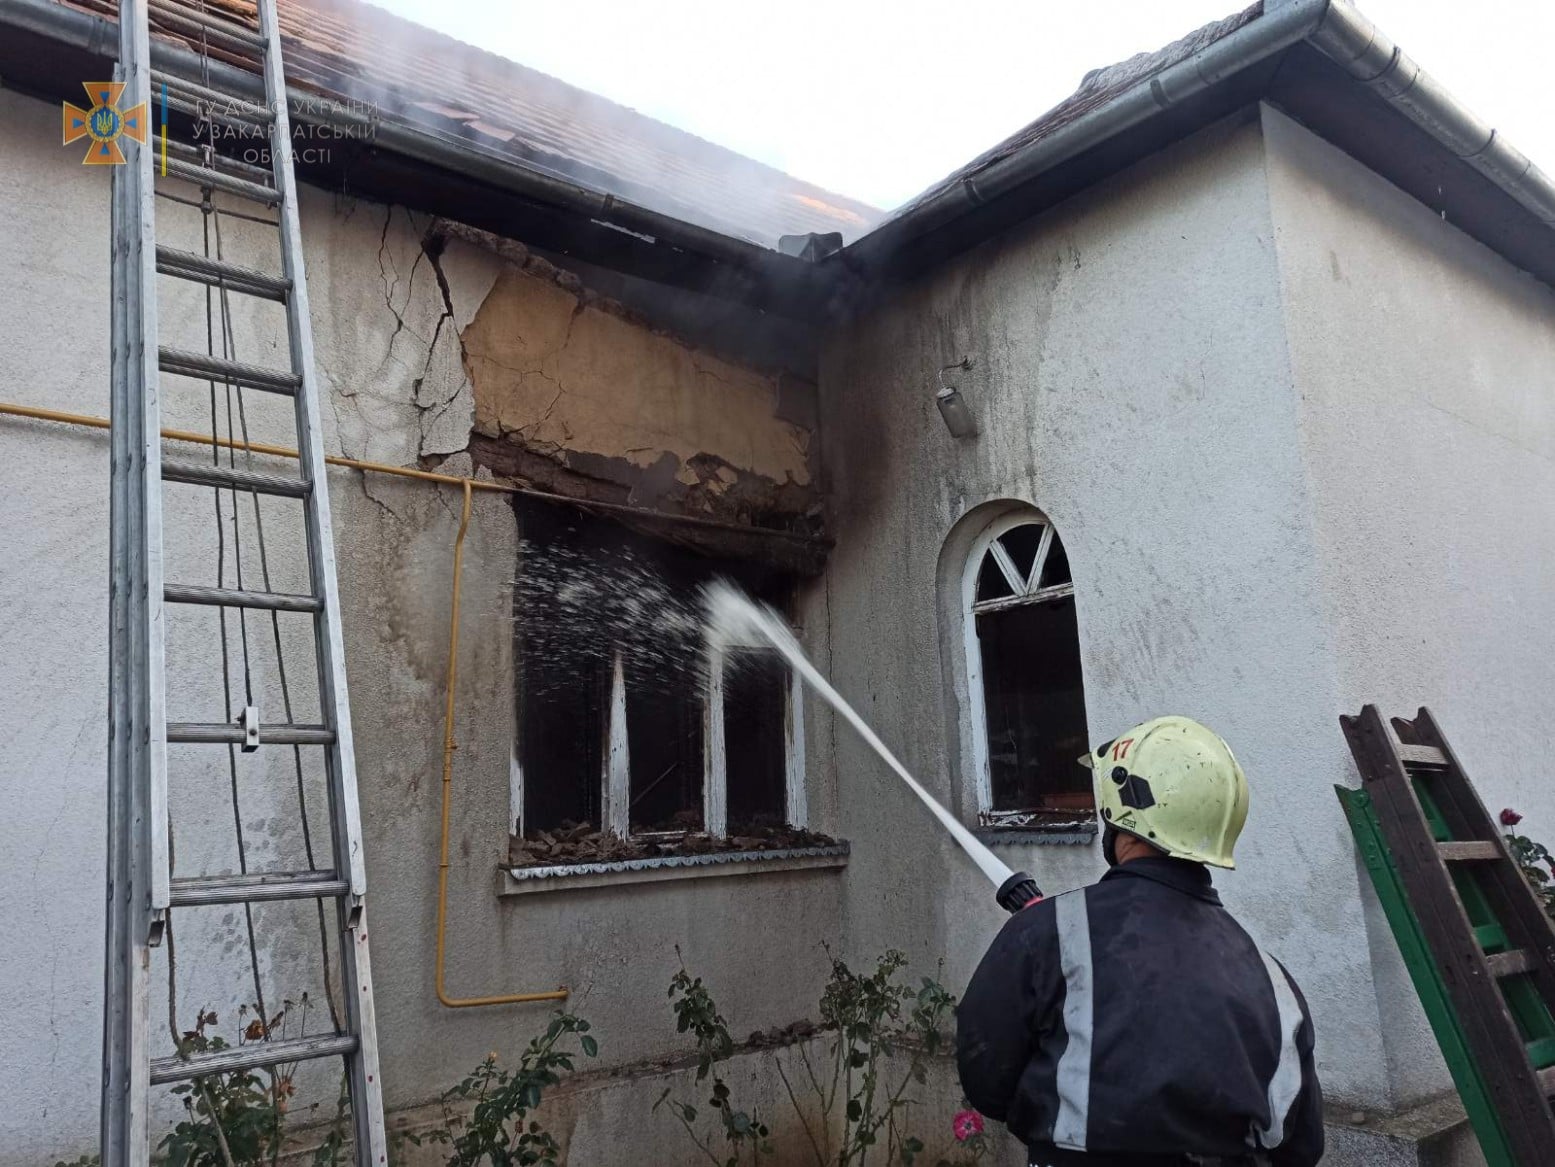 Пожарные эвакуировали хозяина дома и спасли его дом от разрушения.